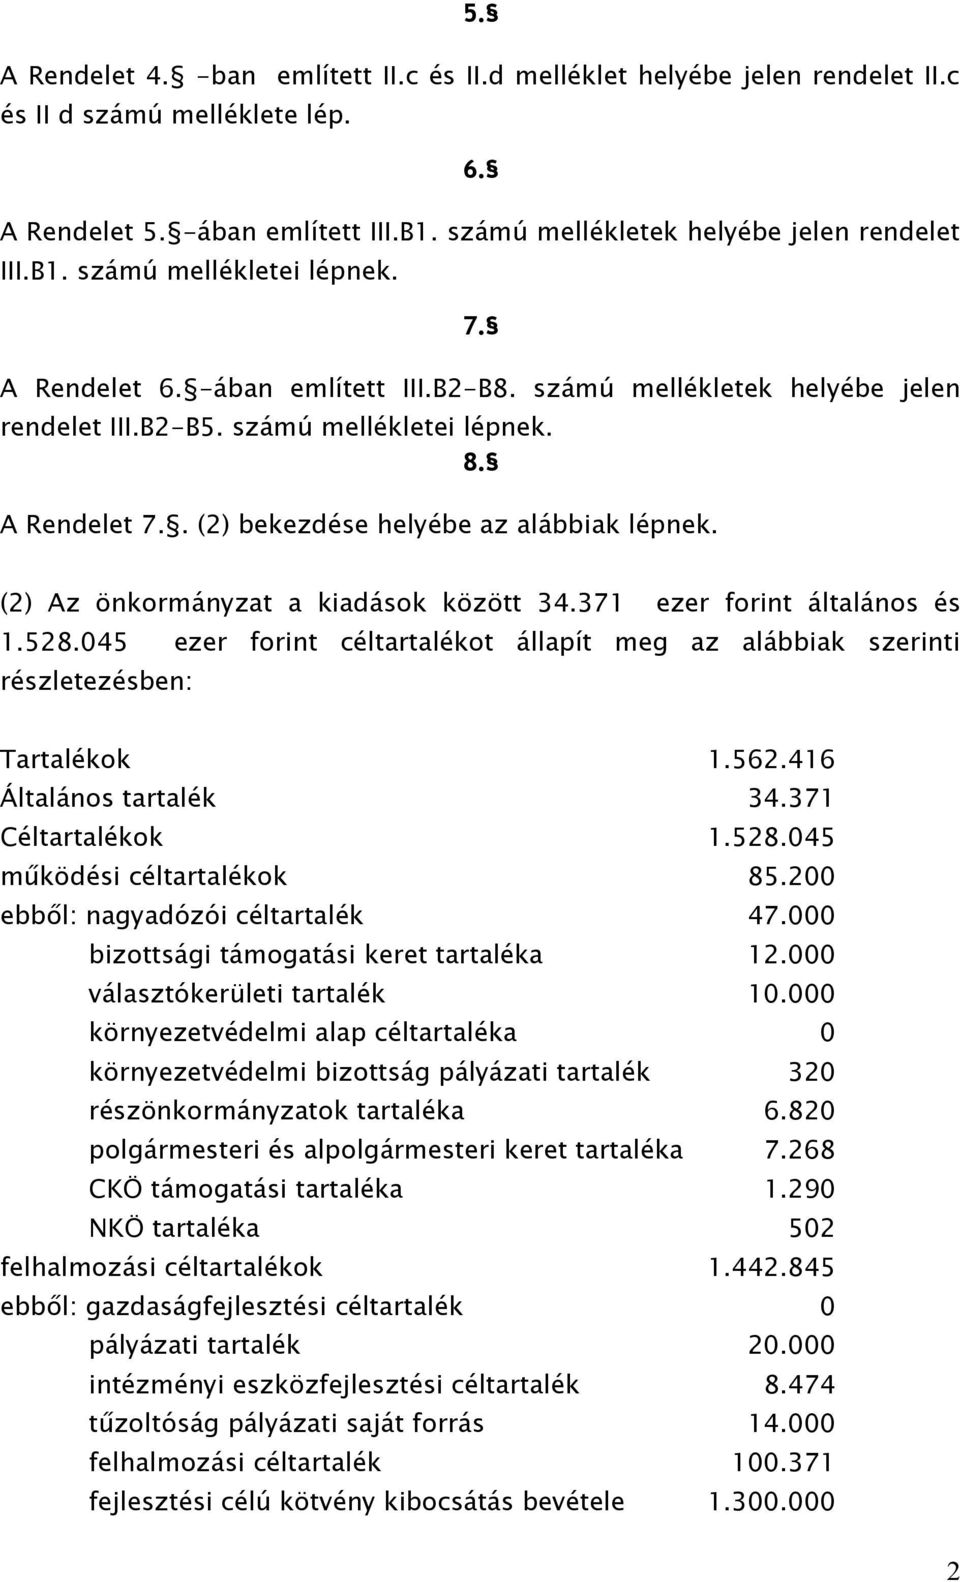 (2) Az önkormányzat a kiadások között 34.371 ezer forint általános és 1.528.045 ezer forint céltartalékot állapít meg az alábbiak szerinti részletezésben: Tartalékok 1.562.416 Általános tartalék 34.